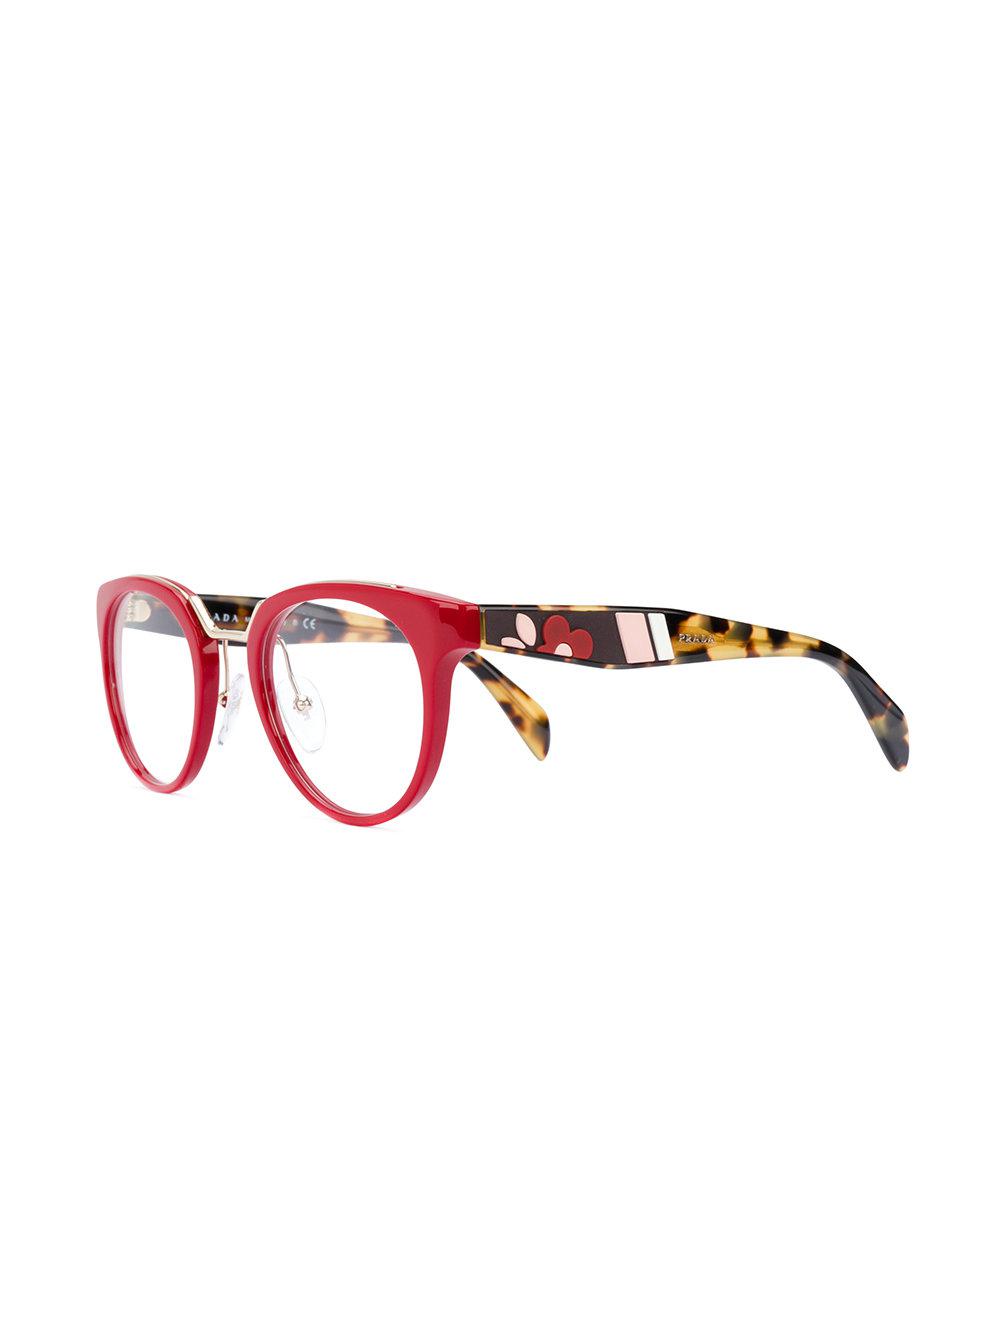 Red Prada Glasses Deals, 60% OFF | ilikepinga.com